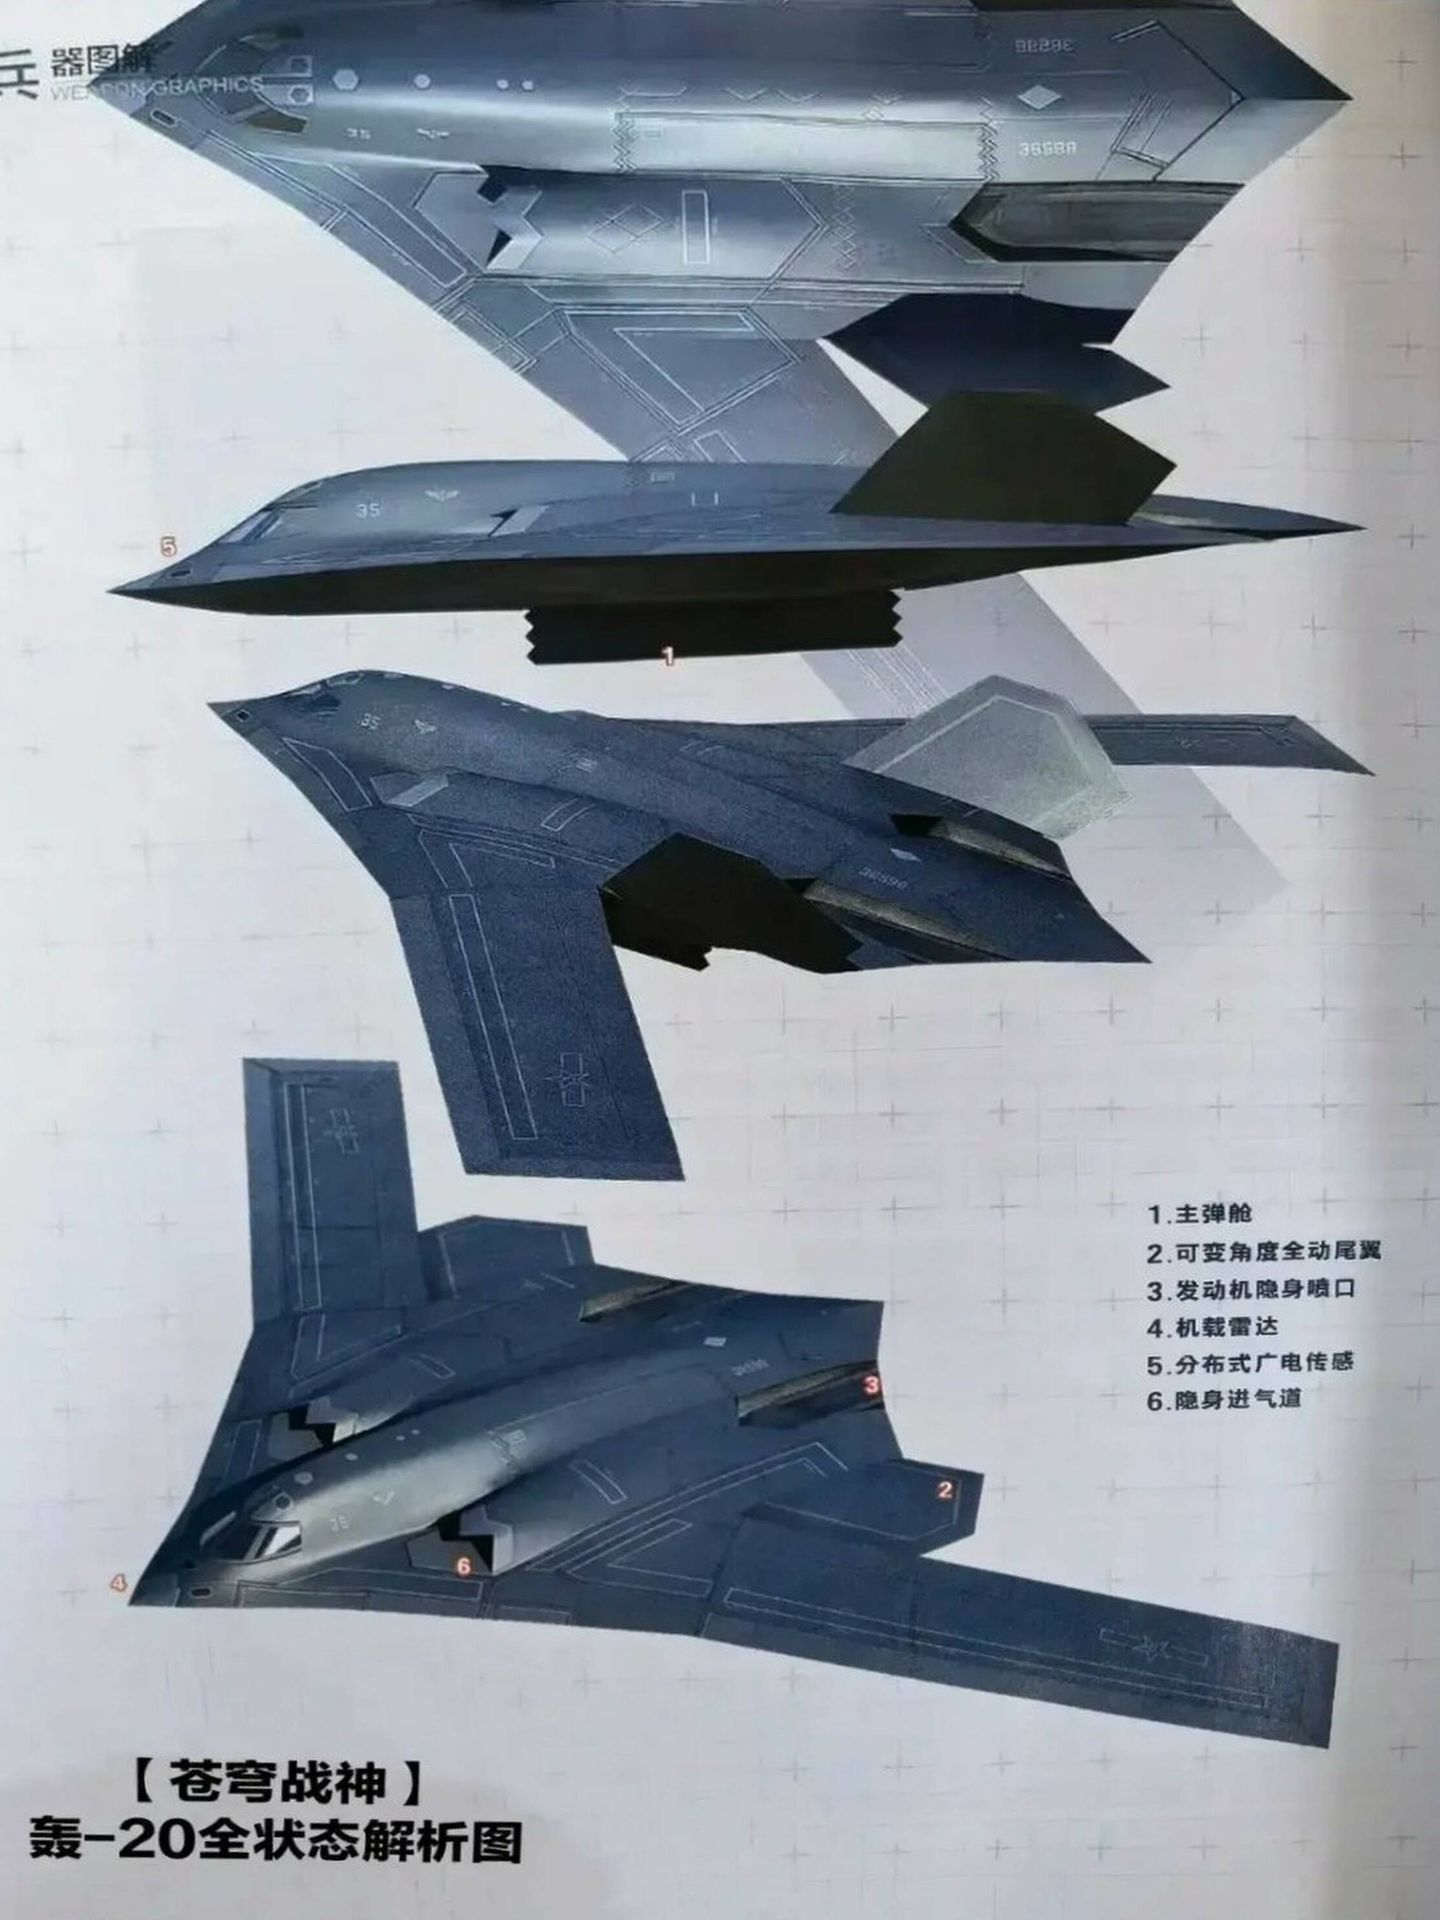 Las imágenes del H-20 en la página de la revista oficial del gigante estatal de defensa Norinco. (Modern Weaponry)